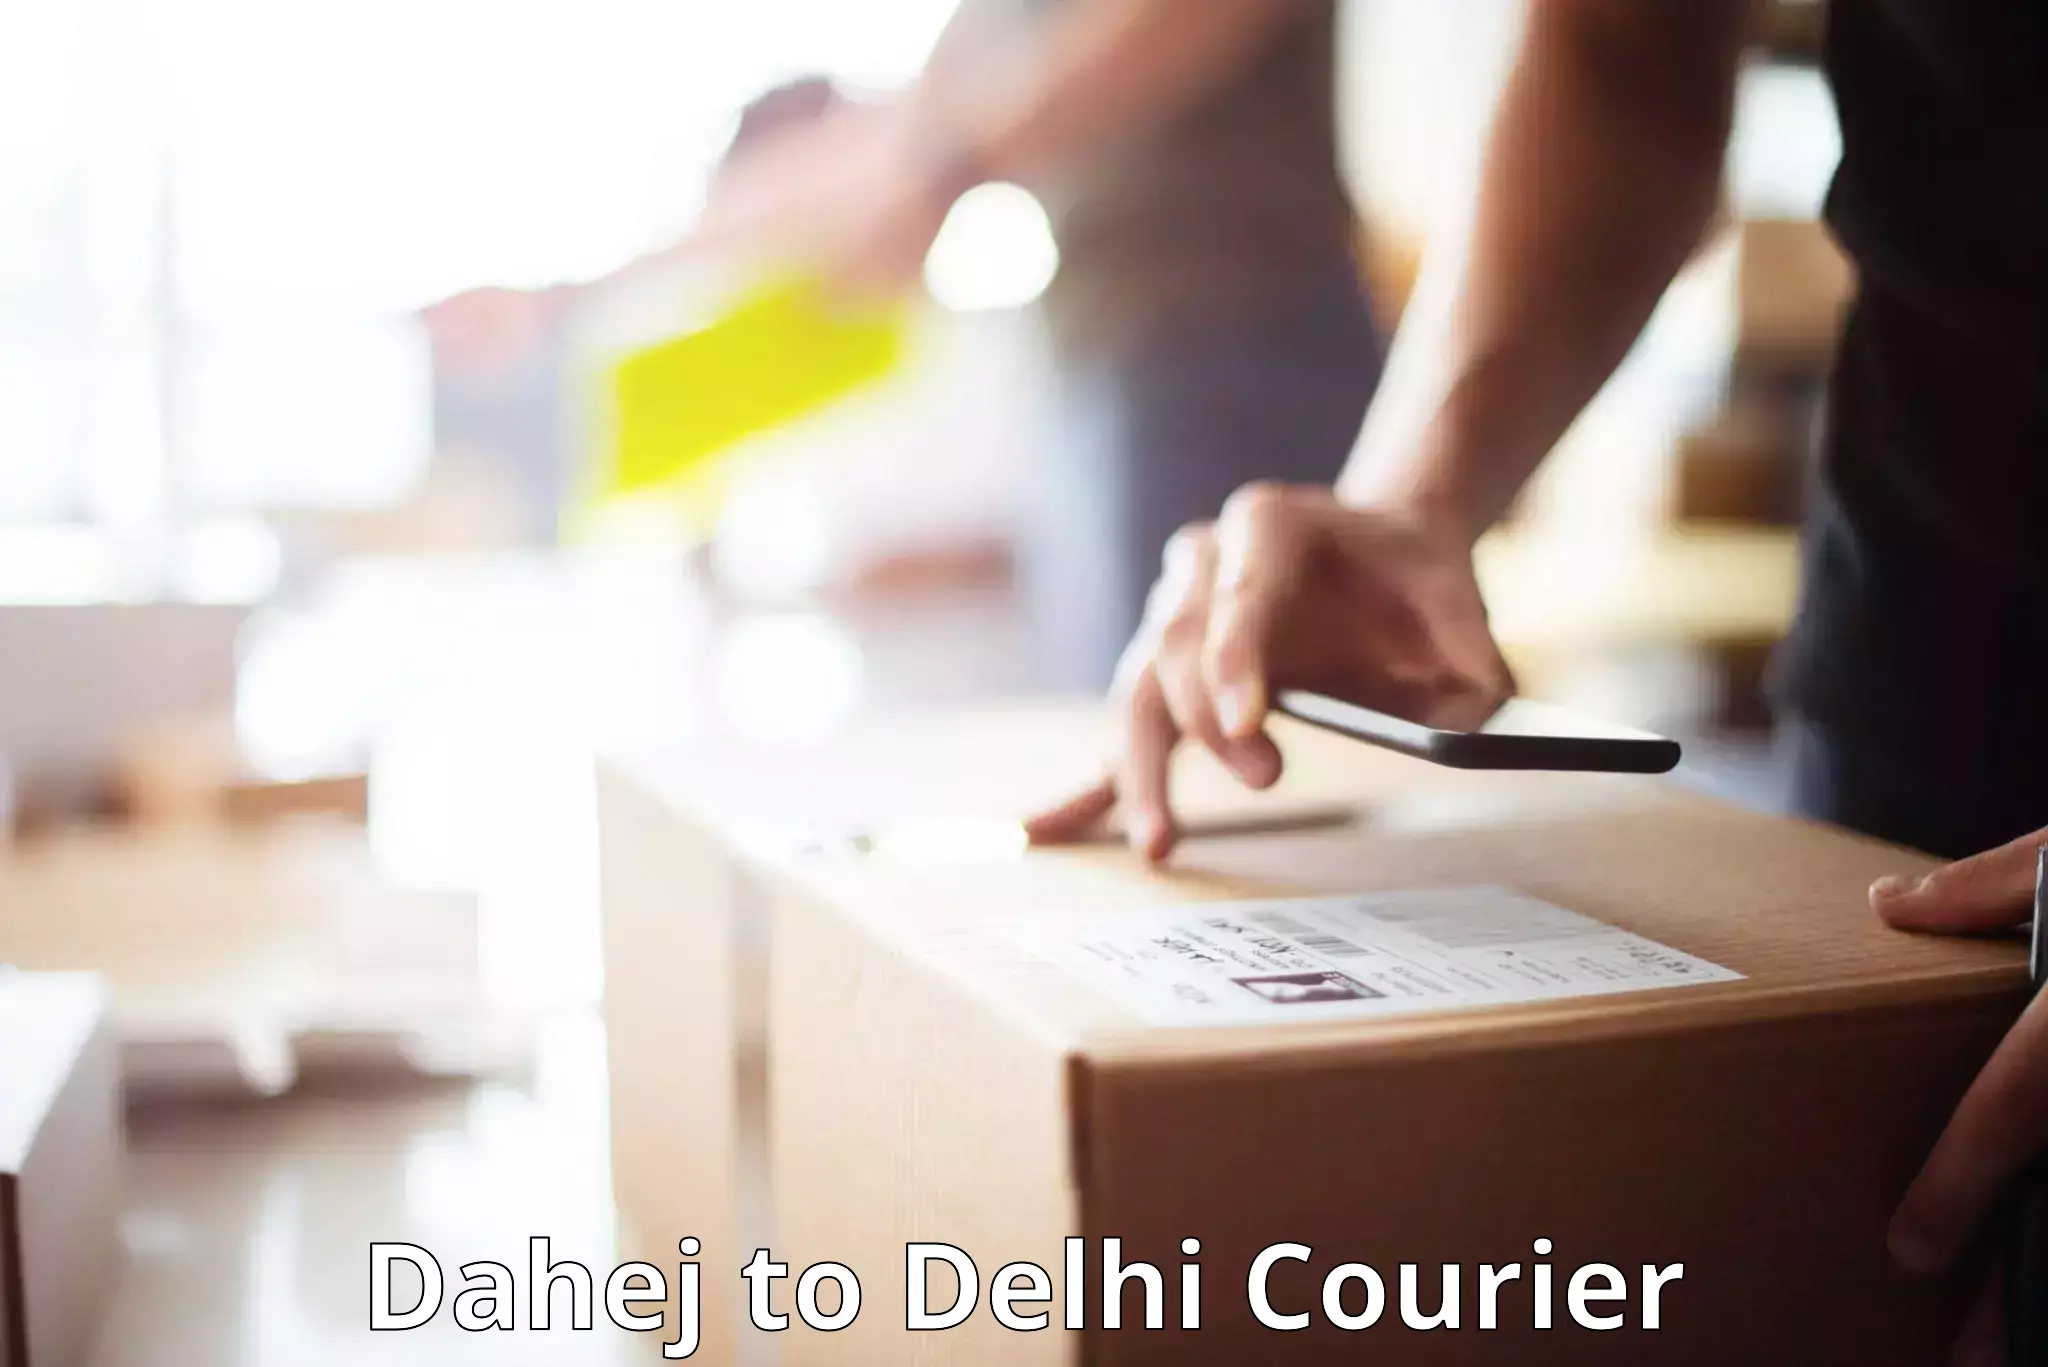 Luggage delivery network Dahej to Delhi